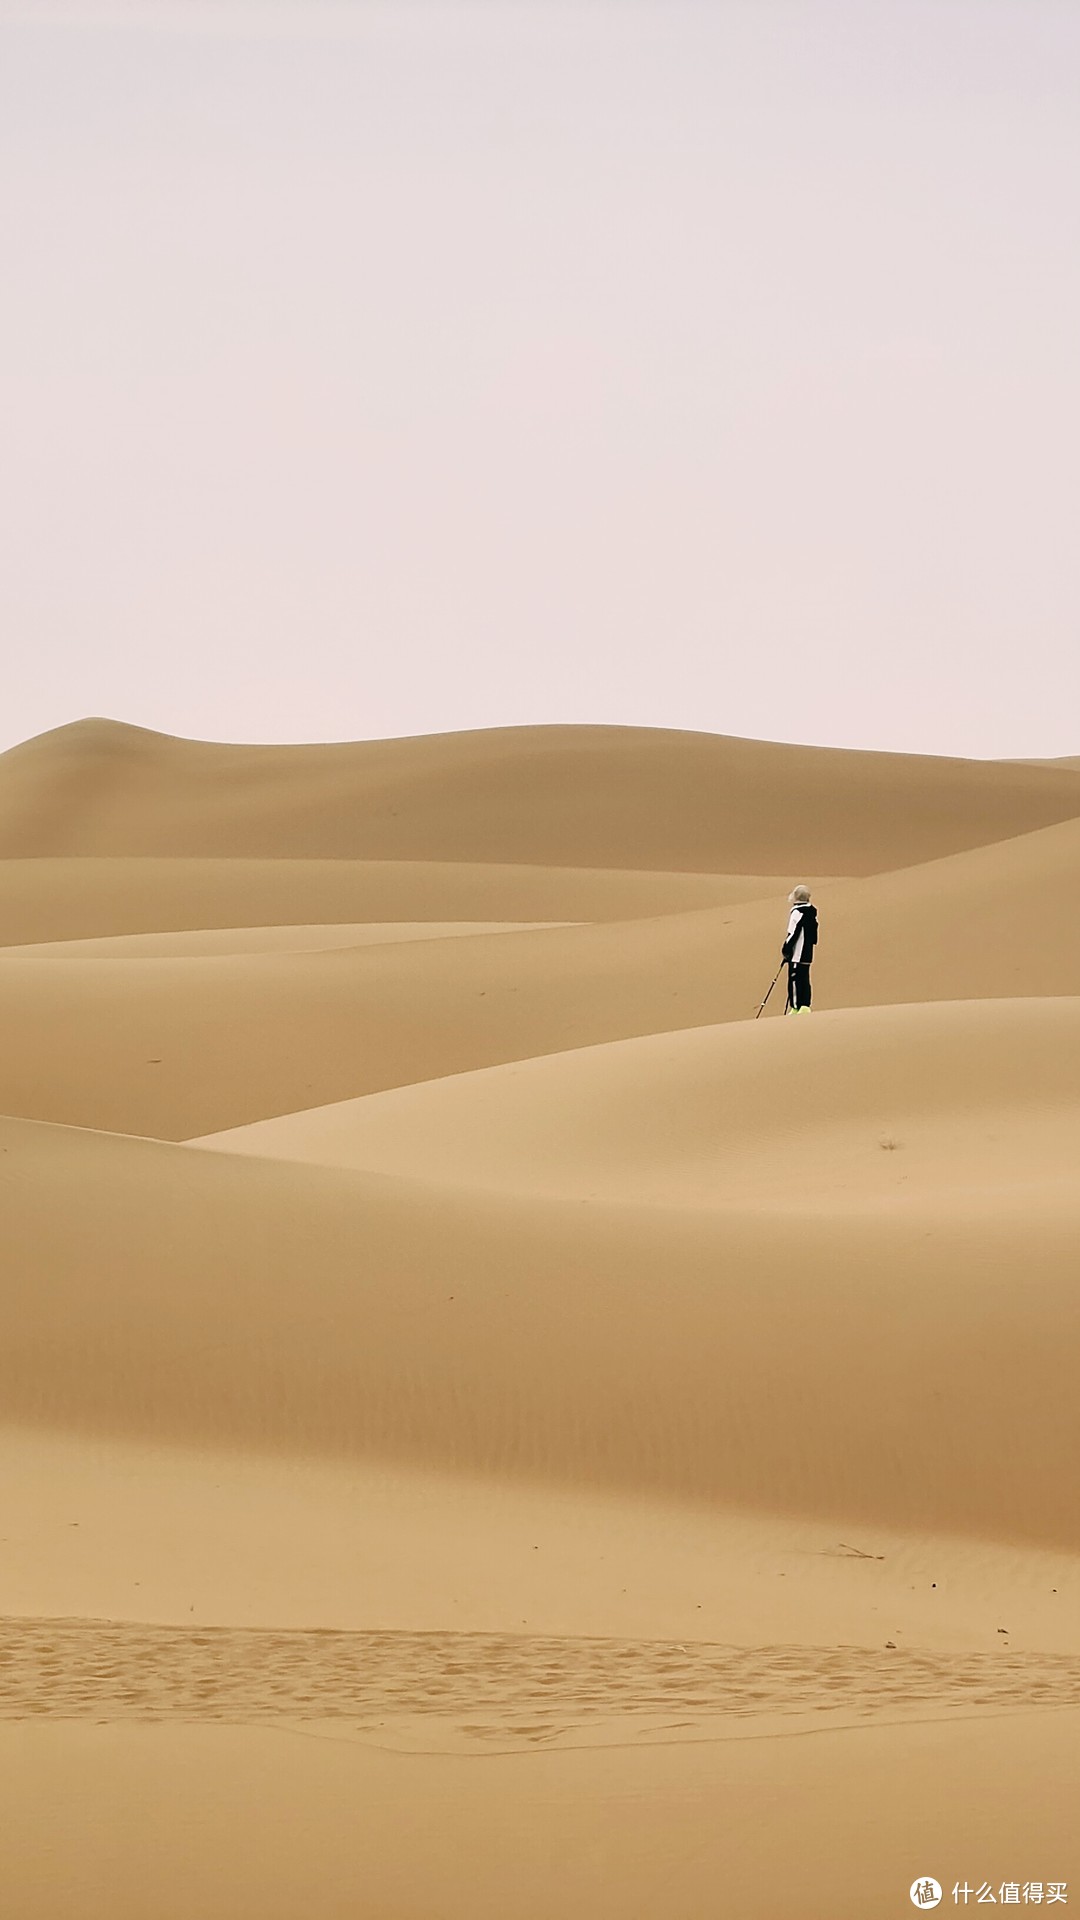 假期出游腾格里沙漠徒步您不妨考虑一下